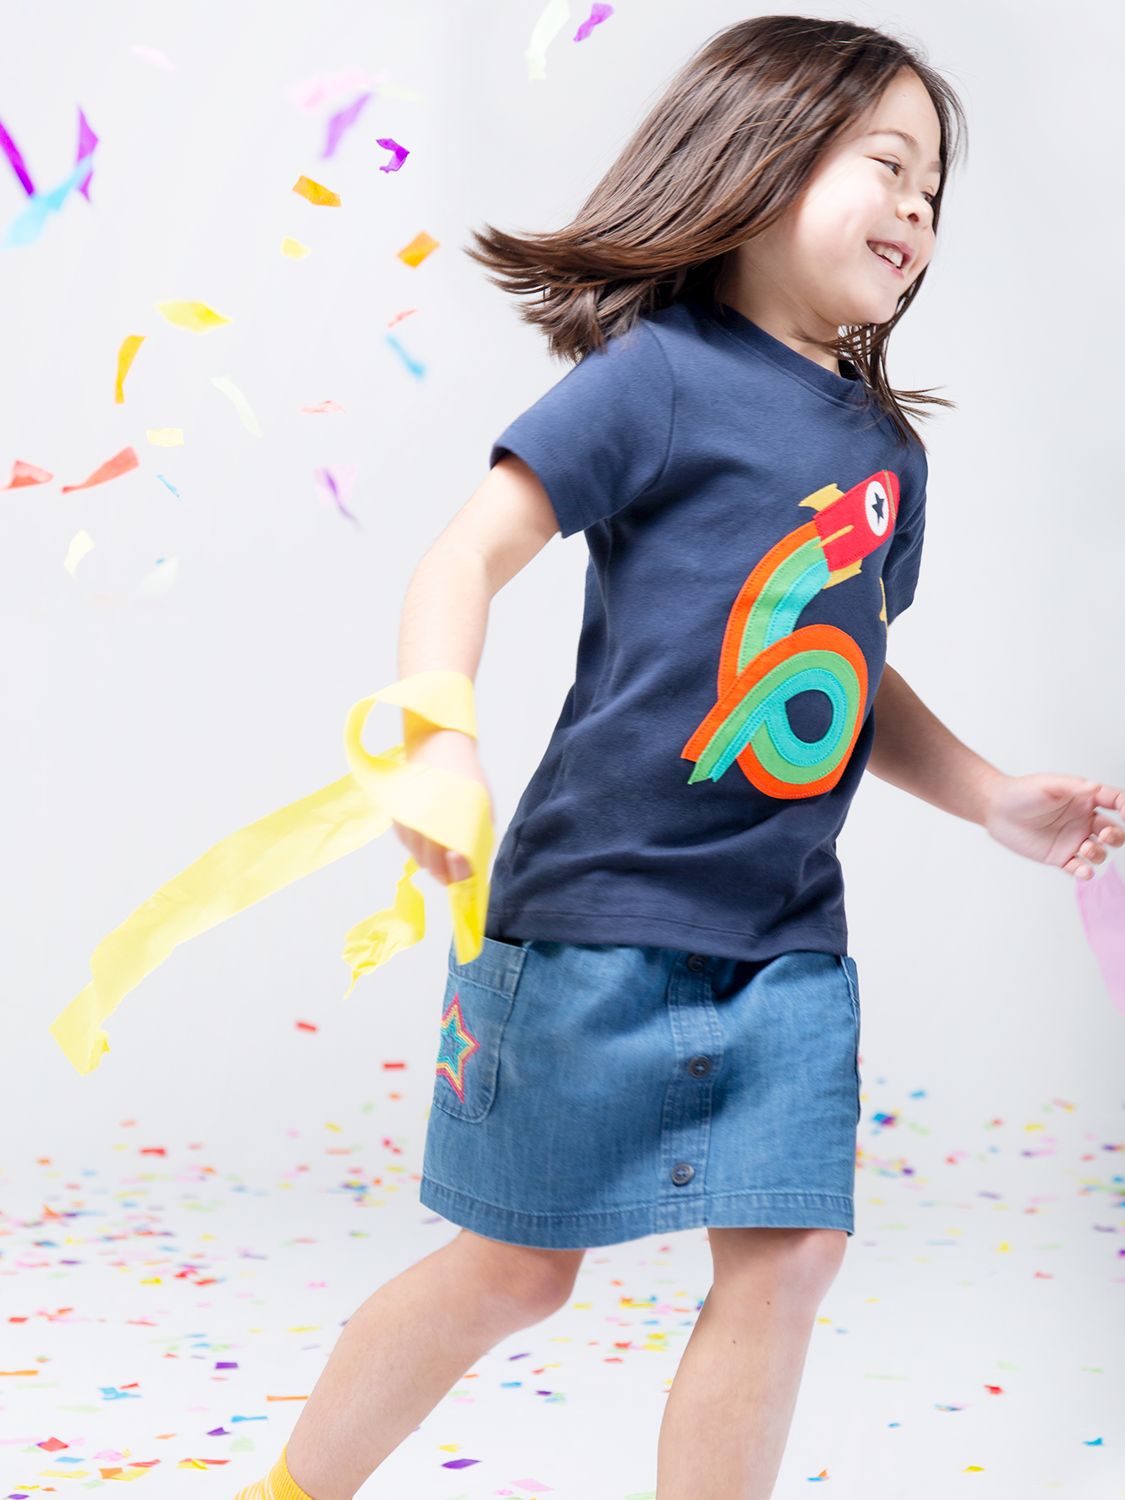 Frugi Kids' Magic Number 6 Organic Cotton Rocket T-shirt, Indigo/Multi, 6-7 years